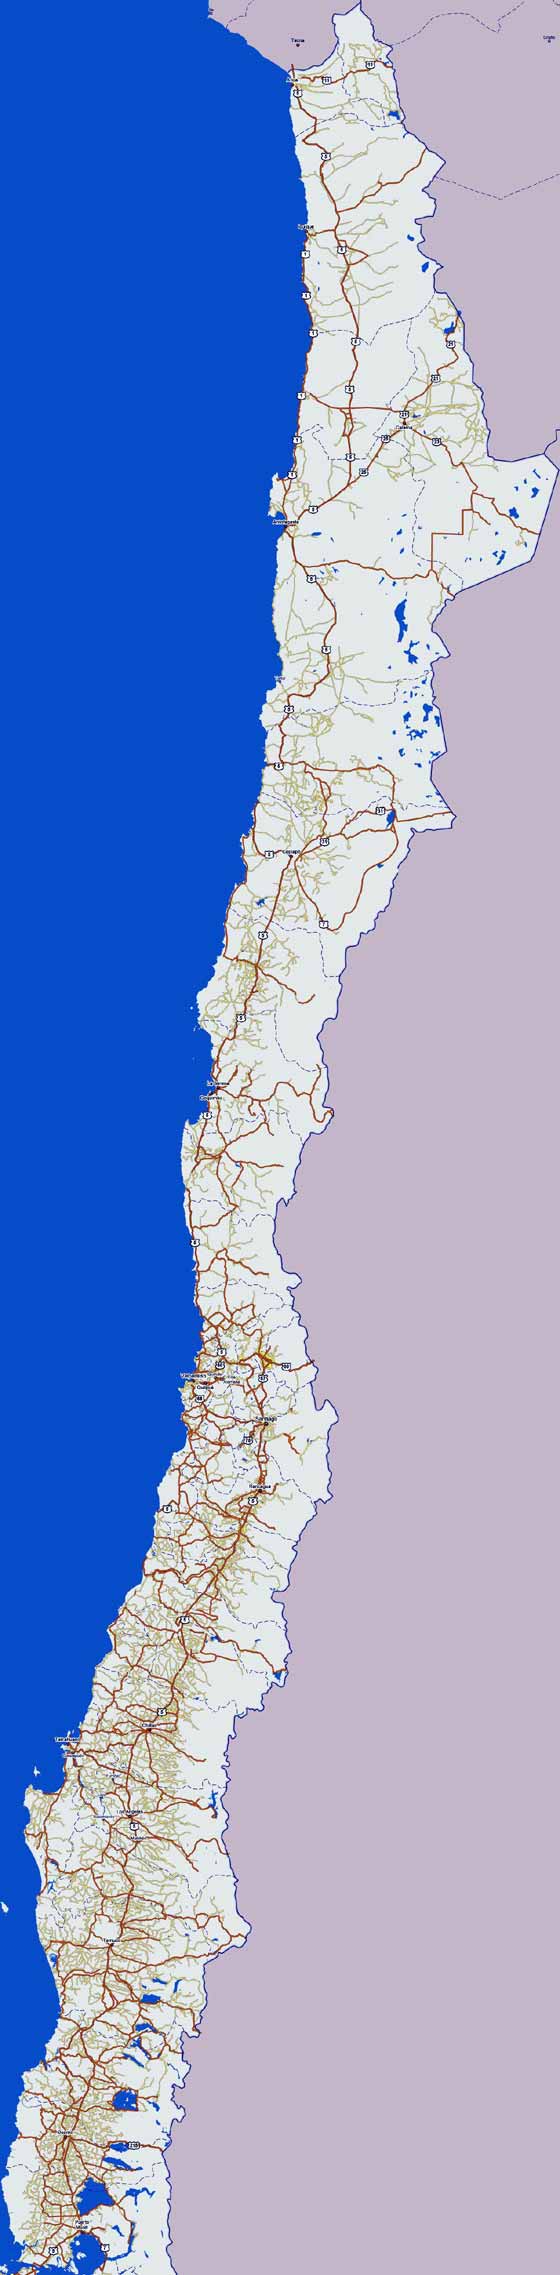 Große Karte von Chile